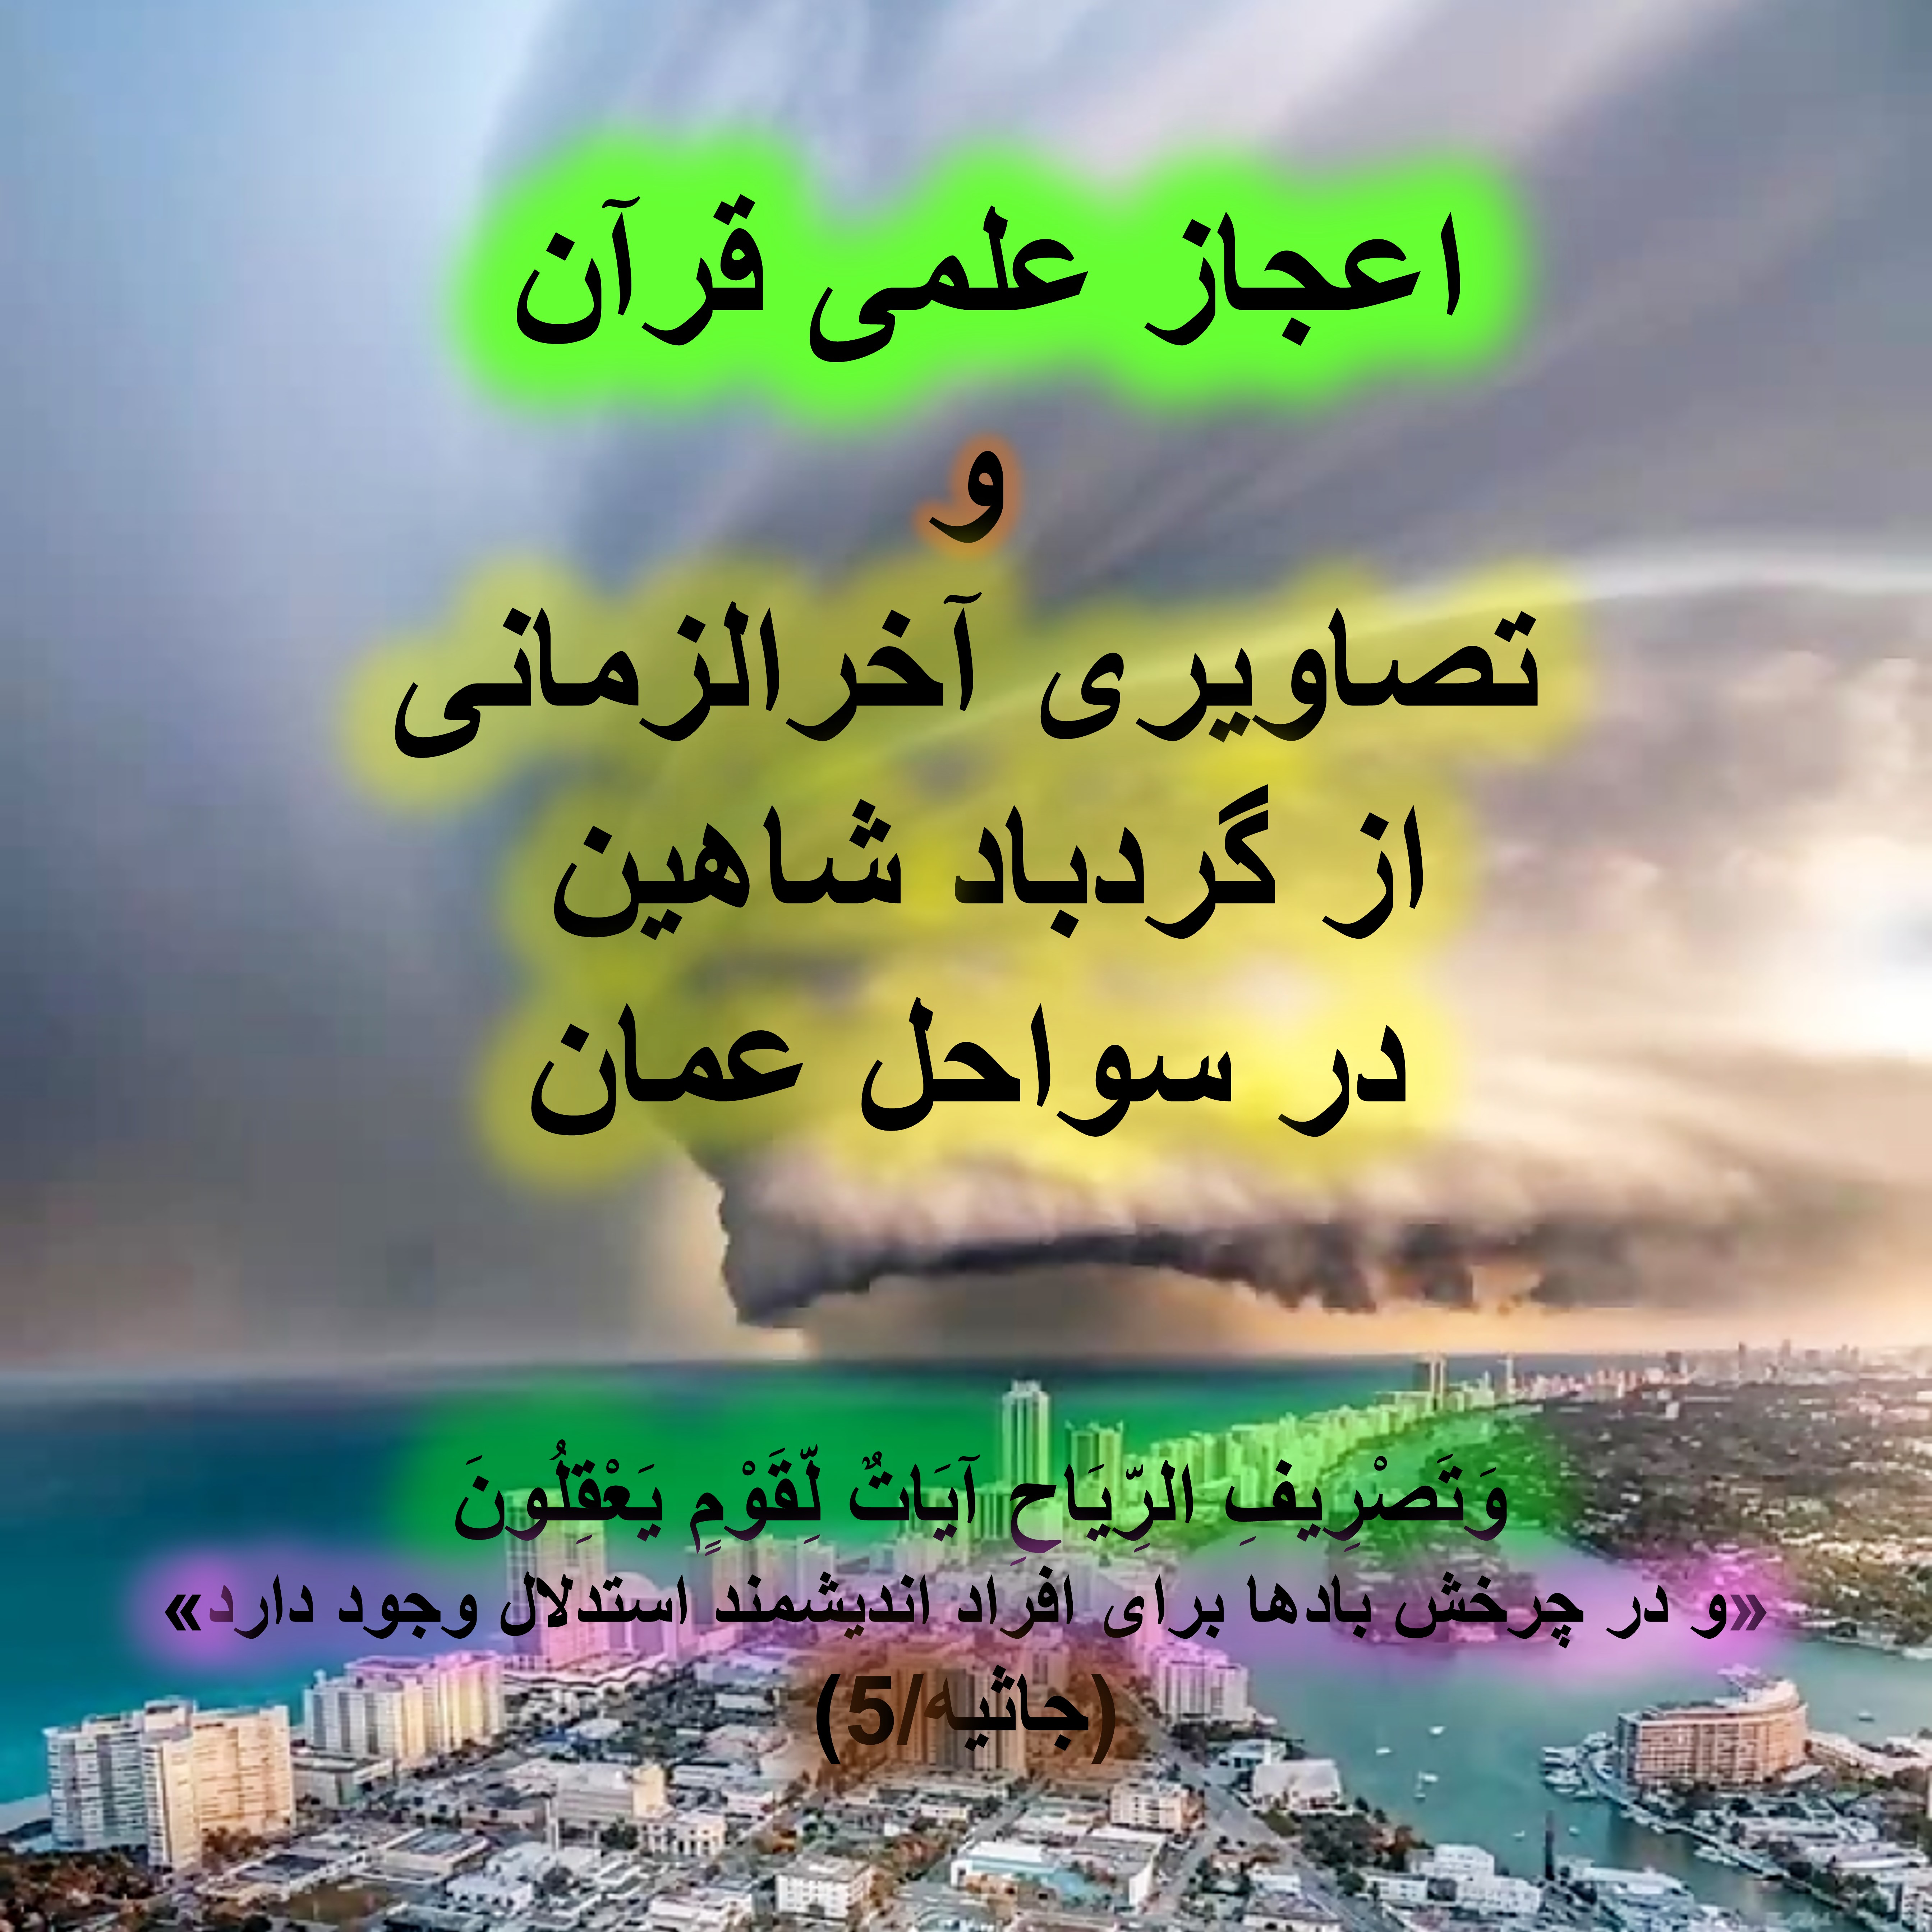 اعجاز علمی قرآن در سواحل عمان